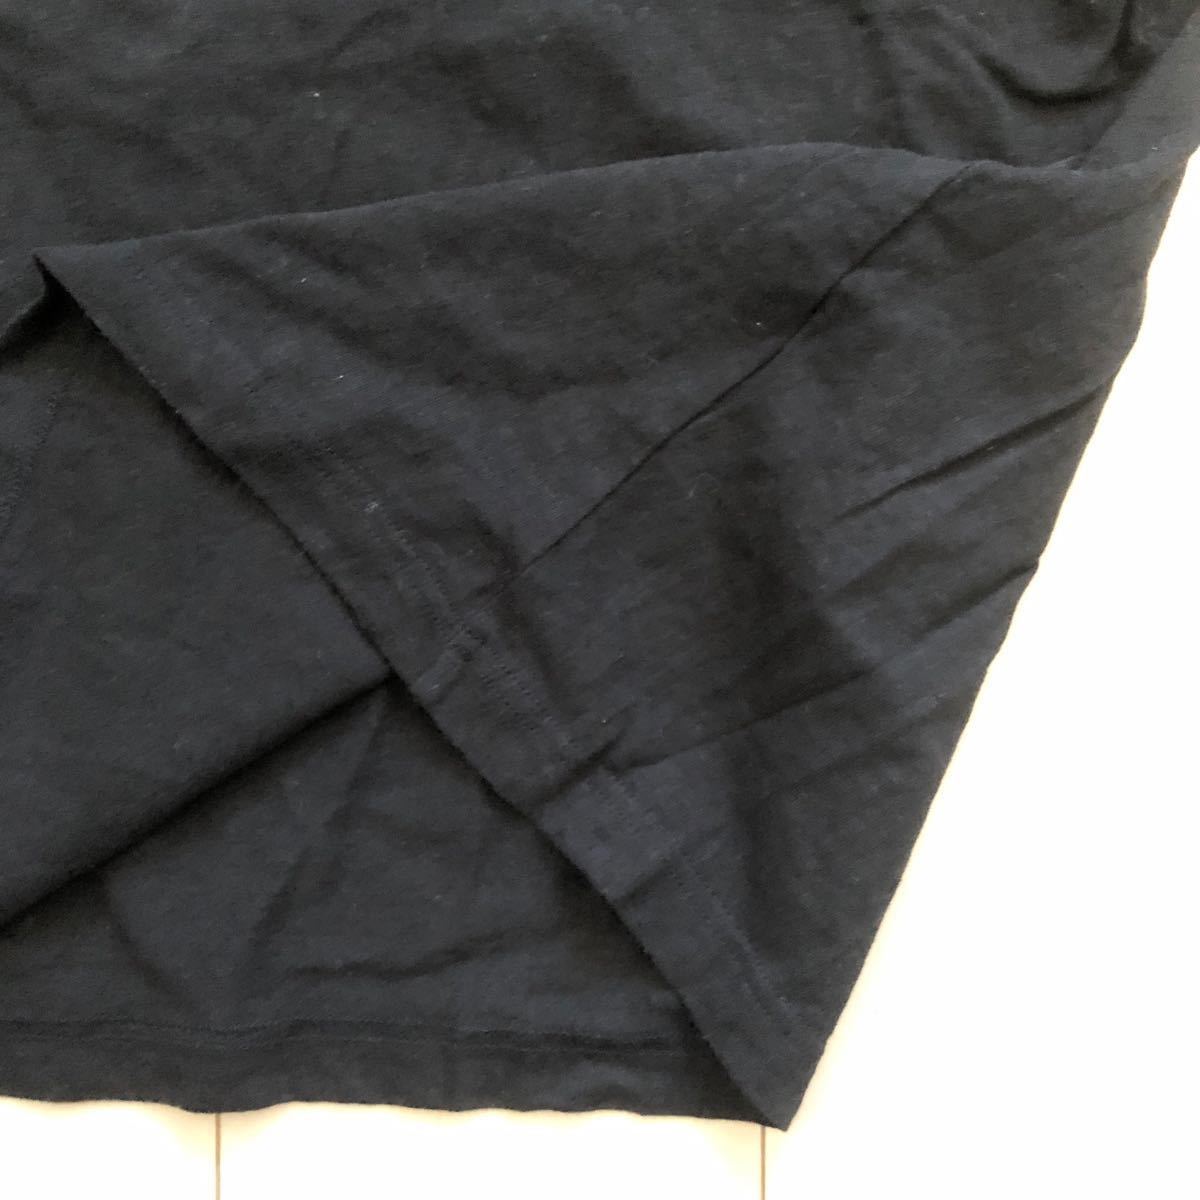  разделение nz чёрный M черный специальный заказ BIOTOPmok шея короткий рукав футболка биотоп HANES Adam et Rope ADAM ET ROPE упаковка T BEEFY-T